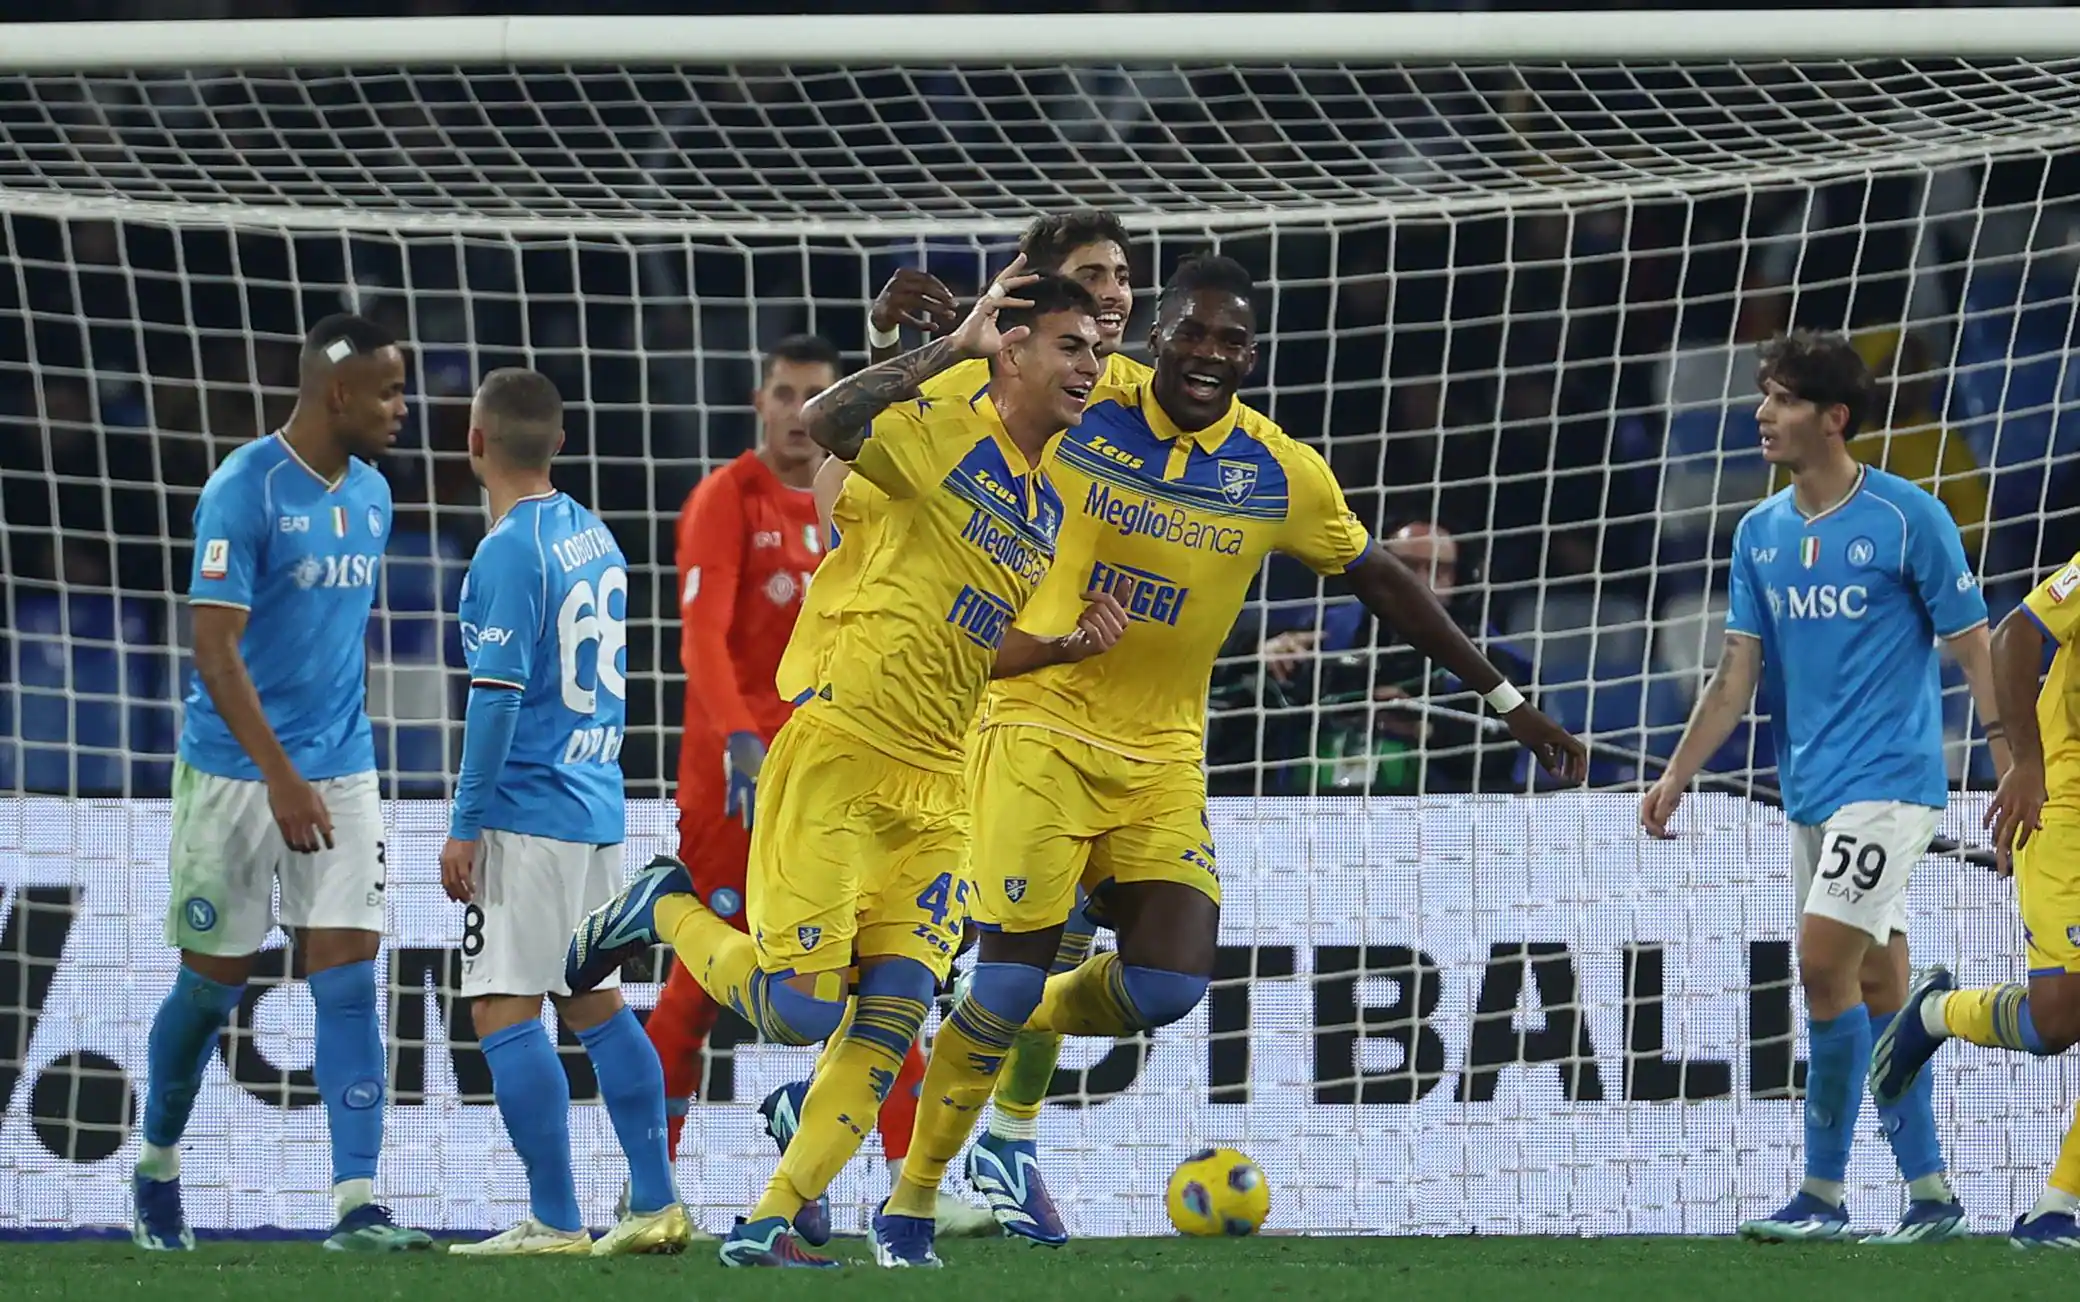 Il Frosinone umilia il Napoli al Maradona: 4 a 0 il finale, la squadra di Di Francesco vola ai Quarti